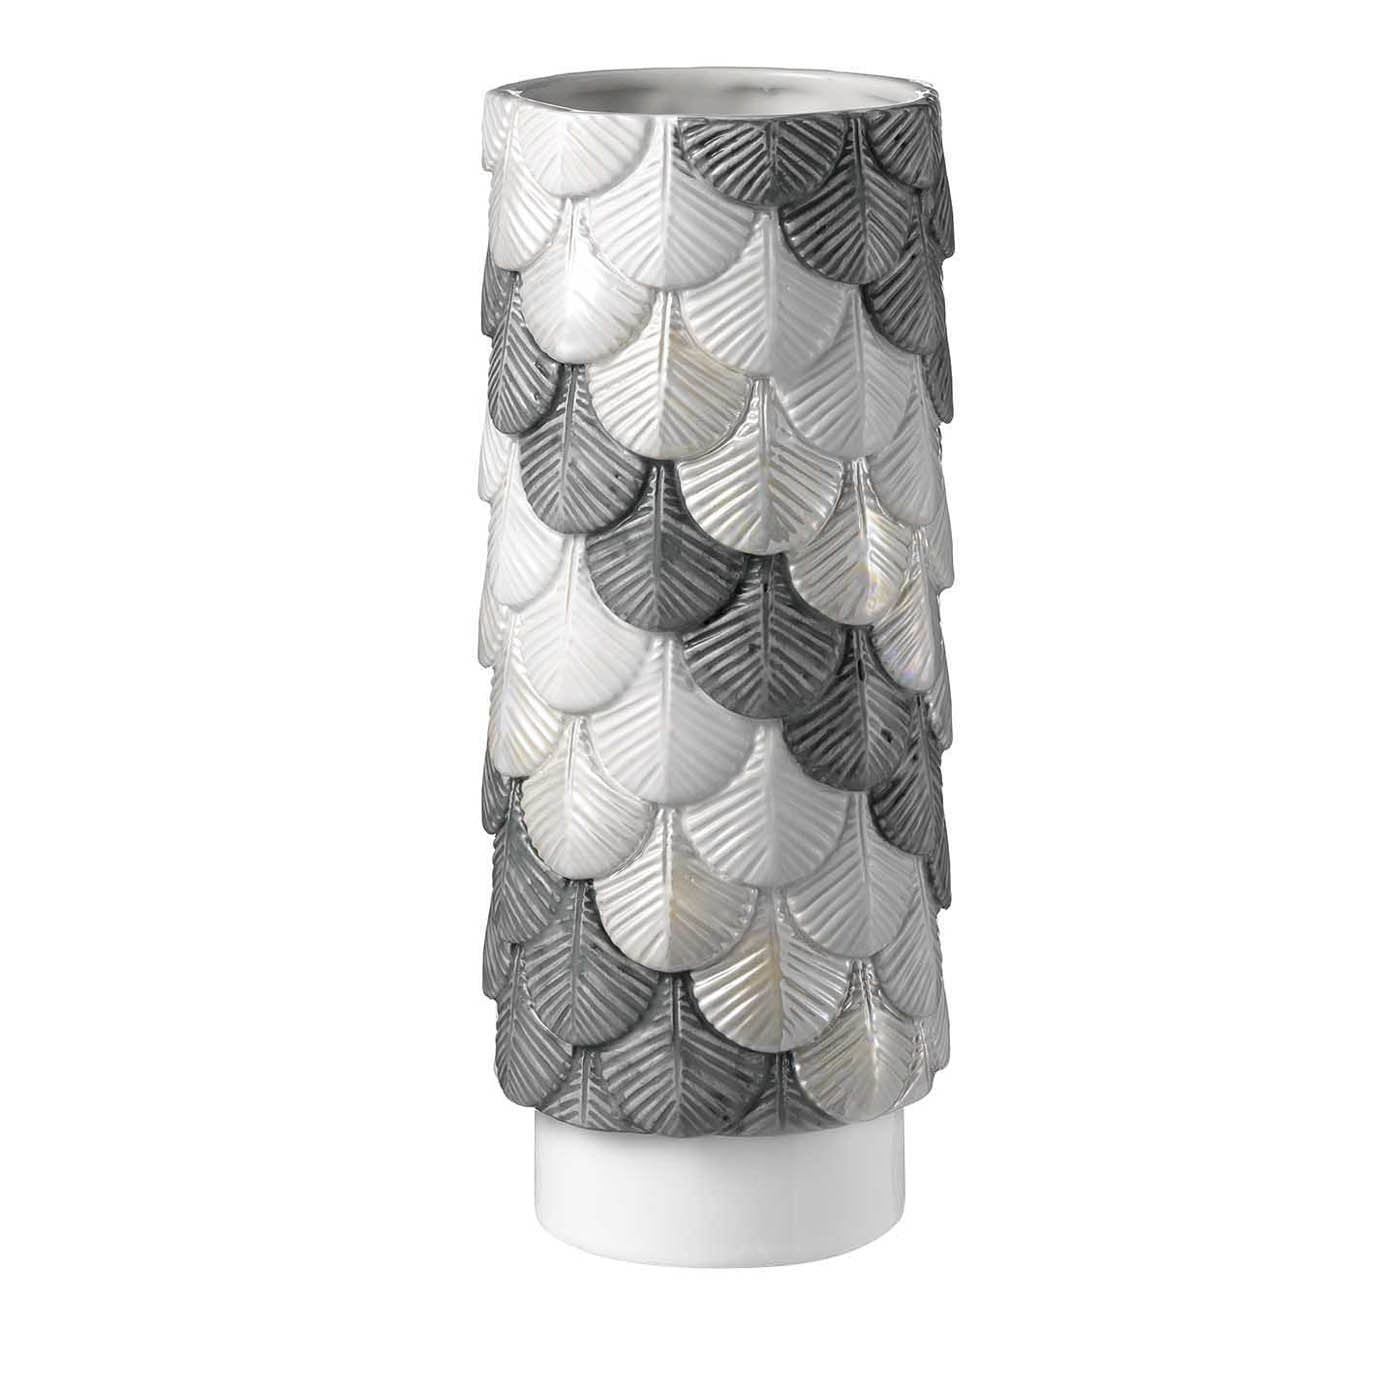 Vase mit grauem und silbernem Federkleid - Hauptansicht